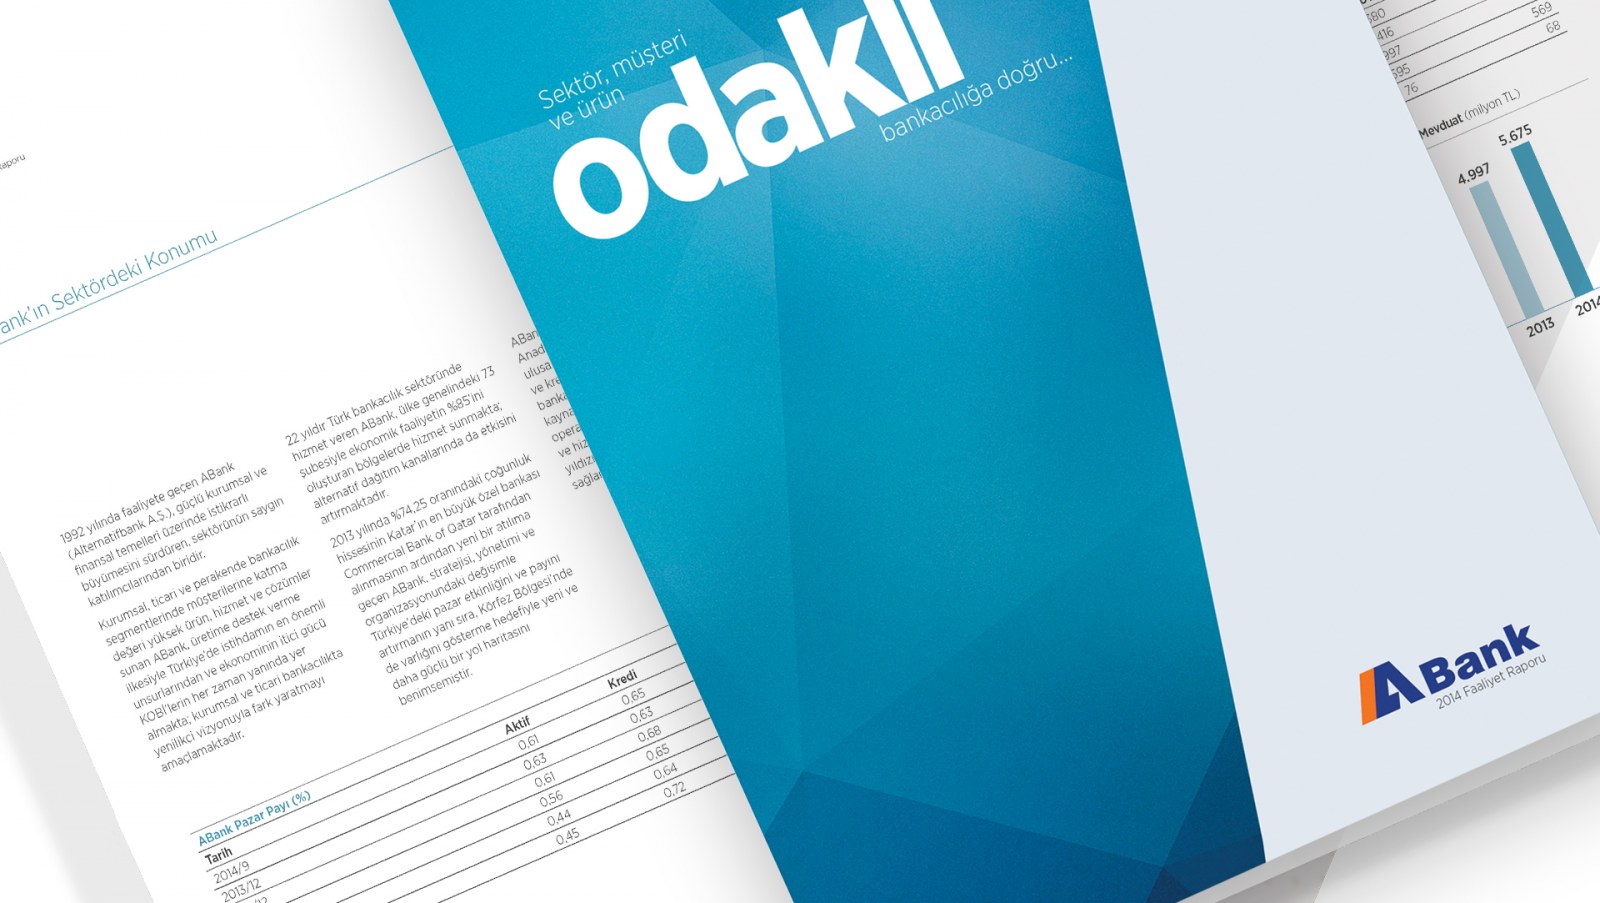 ABANK / 2014 Faaliyet Raporu / 2014 Annual Report